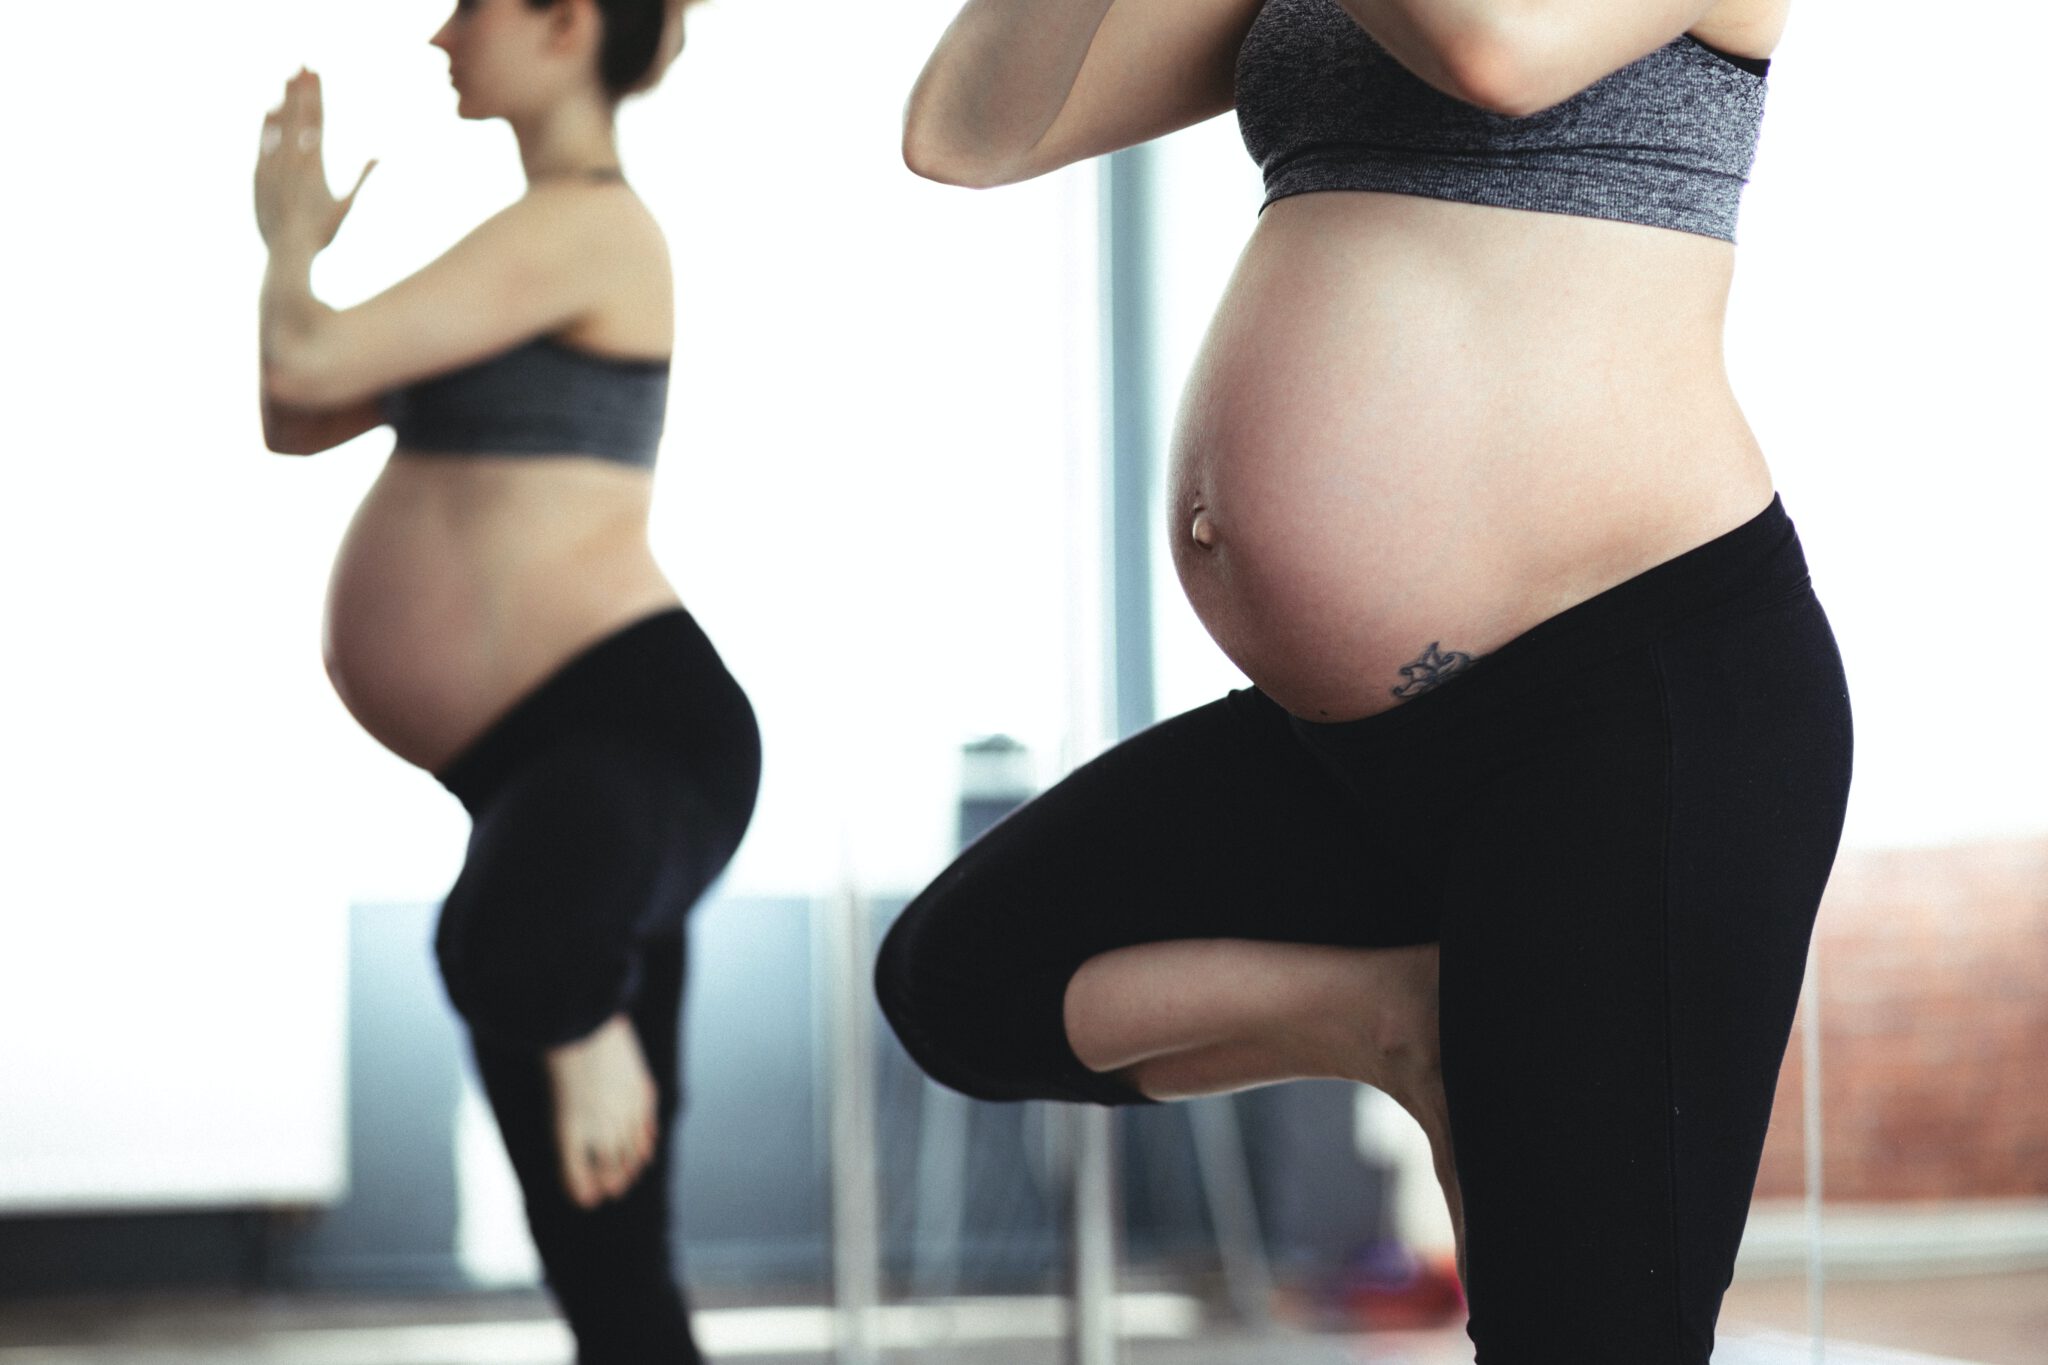 vrouw doet yoga pose en is nu zwanger